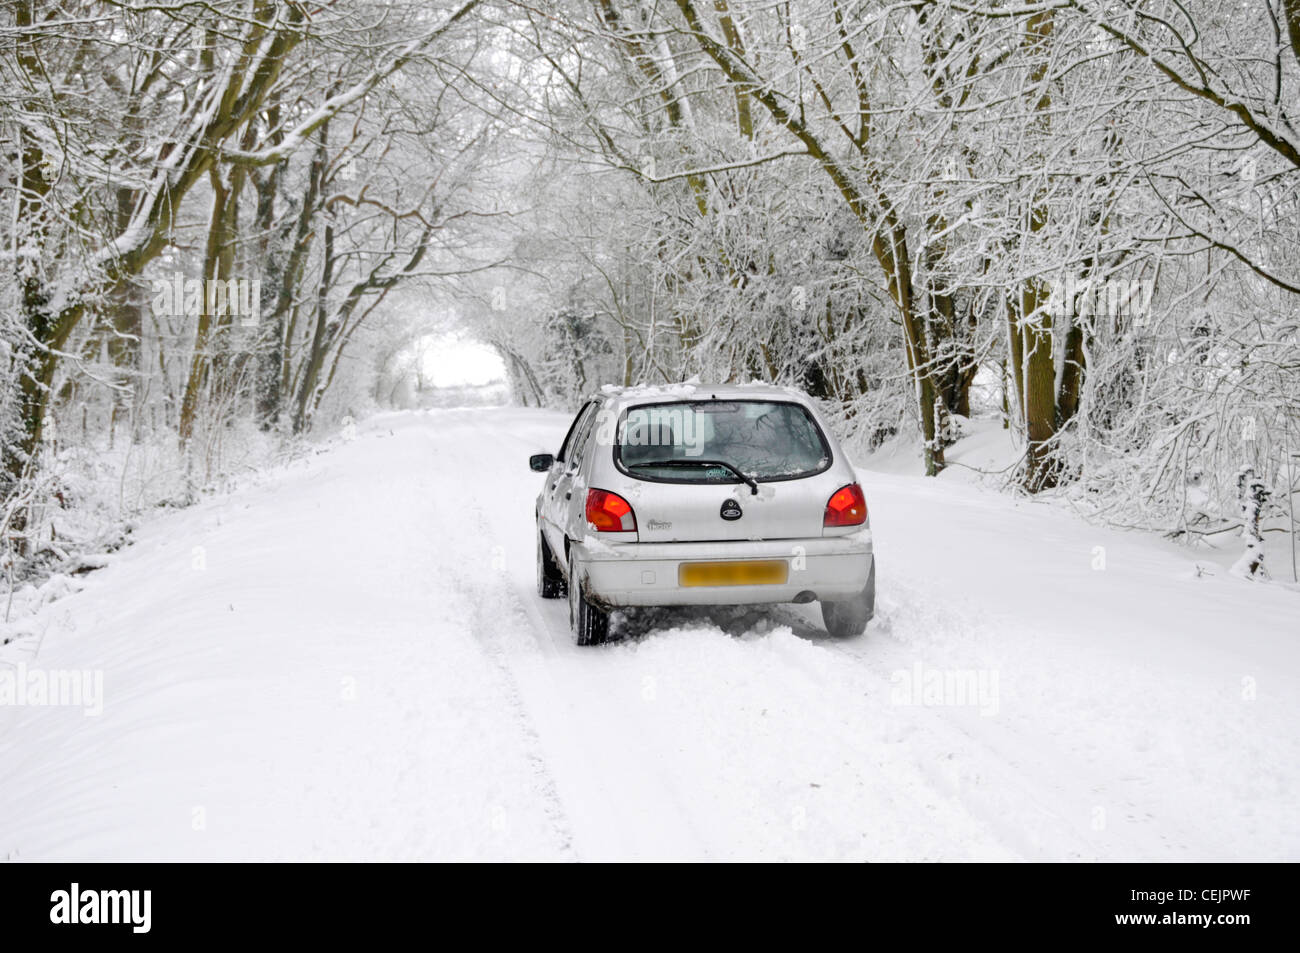 Escena de nieve Ford Fiesta coche de conducción en carretera lane por debajo del túnel de árboles cubiertos de nieve en invierno wonderland Brentwood Essex, Inglaterra Foto de stock